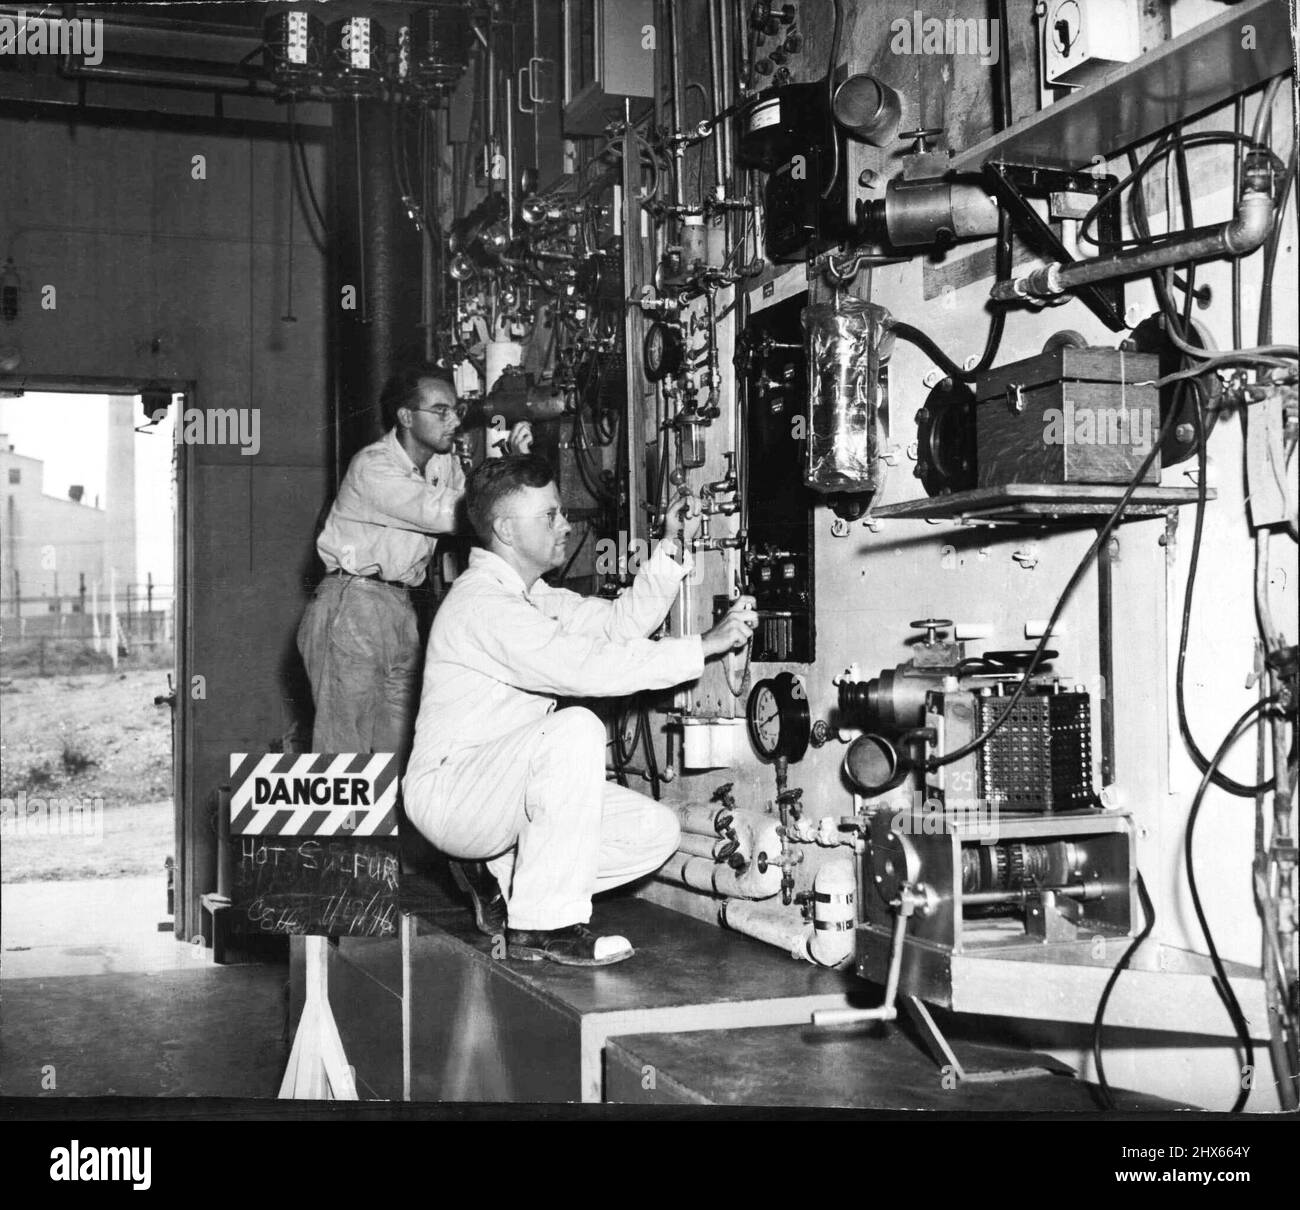 Operate Controls in Atom Plant Project -- an einer Fernbedienungstafel für ein 'heißes' Labor im Oak Ridge, Tennessee, Atomkraftwerk-Projekt, August 2, sind John H. Rauscher (links), Forscher-Solvent-Ingenieur, der durch abgeschirmtes Mikroskop schaut, und G. M. Herbert (rechts), Forscher-Chemiker, der die Bedienelemente justiert. Der Sing (links), „Wut“, weist auf Grund der Kontrolle, Board, was die Operation ermöglicht, die radioaktive Spezies in der Menge für die Produktion des Isotops extrahiert, um in medizinischen Resea verwendet werden Stockfoto